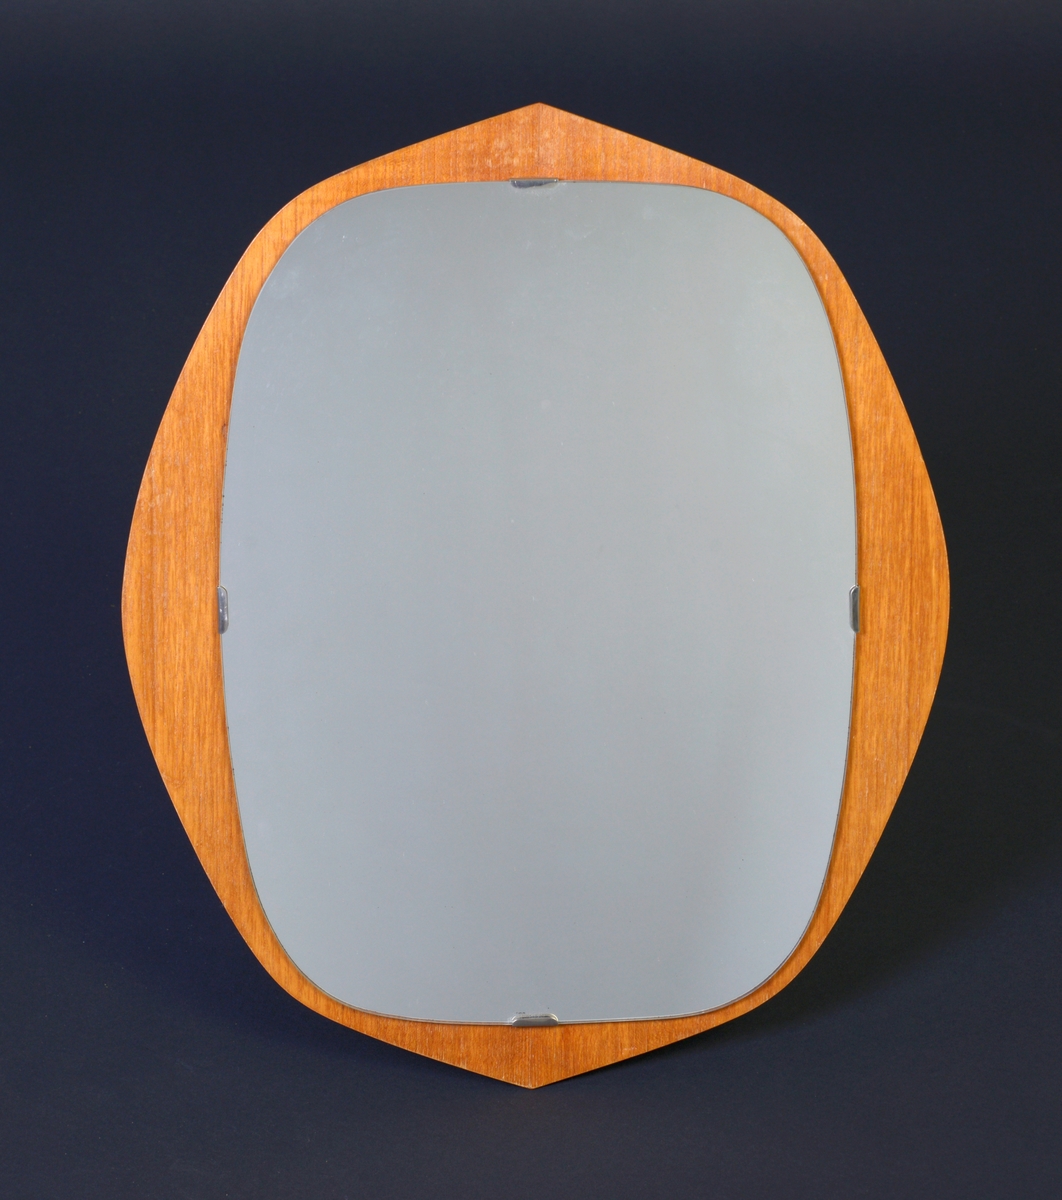 Rundt-ovalt speil laget av kryssfiner og speilglass. Rammen er laget av kryssfiner og er rundt til ovalt med en lien spiss i begge ender. Speilglasset er firkantet med avrundede hjørner. Speilet er festet til rammen med metallklips. På baksiden er det festet en trekantet metallhempe for oppheng.